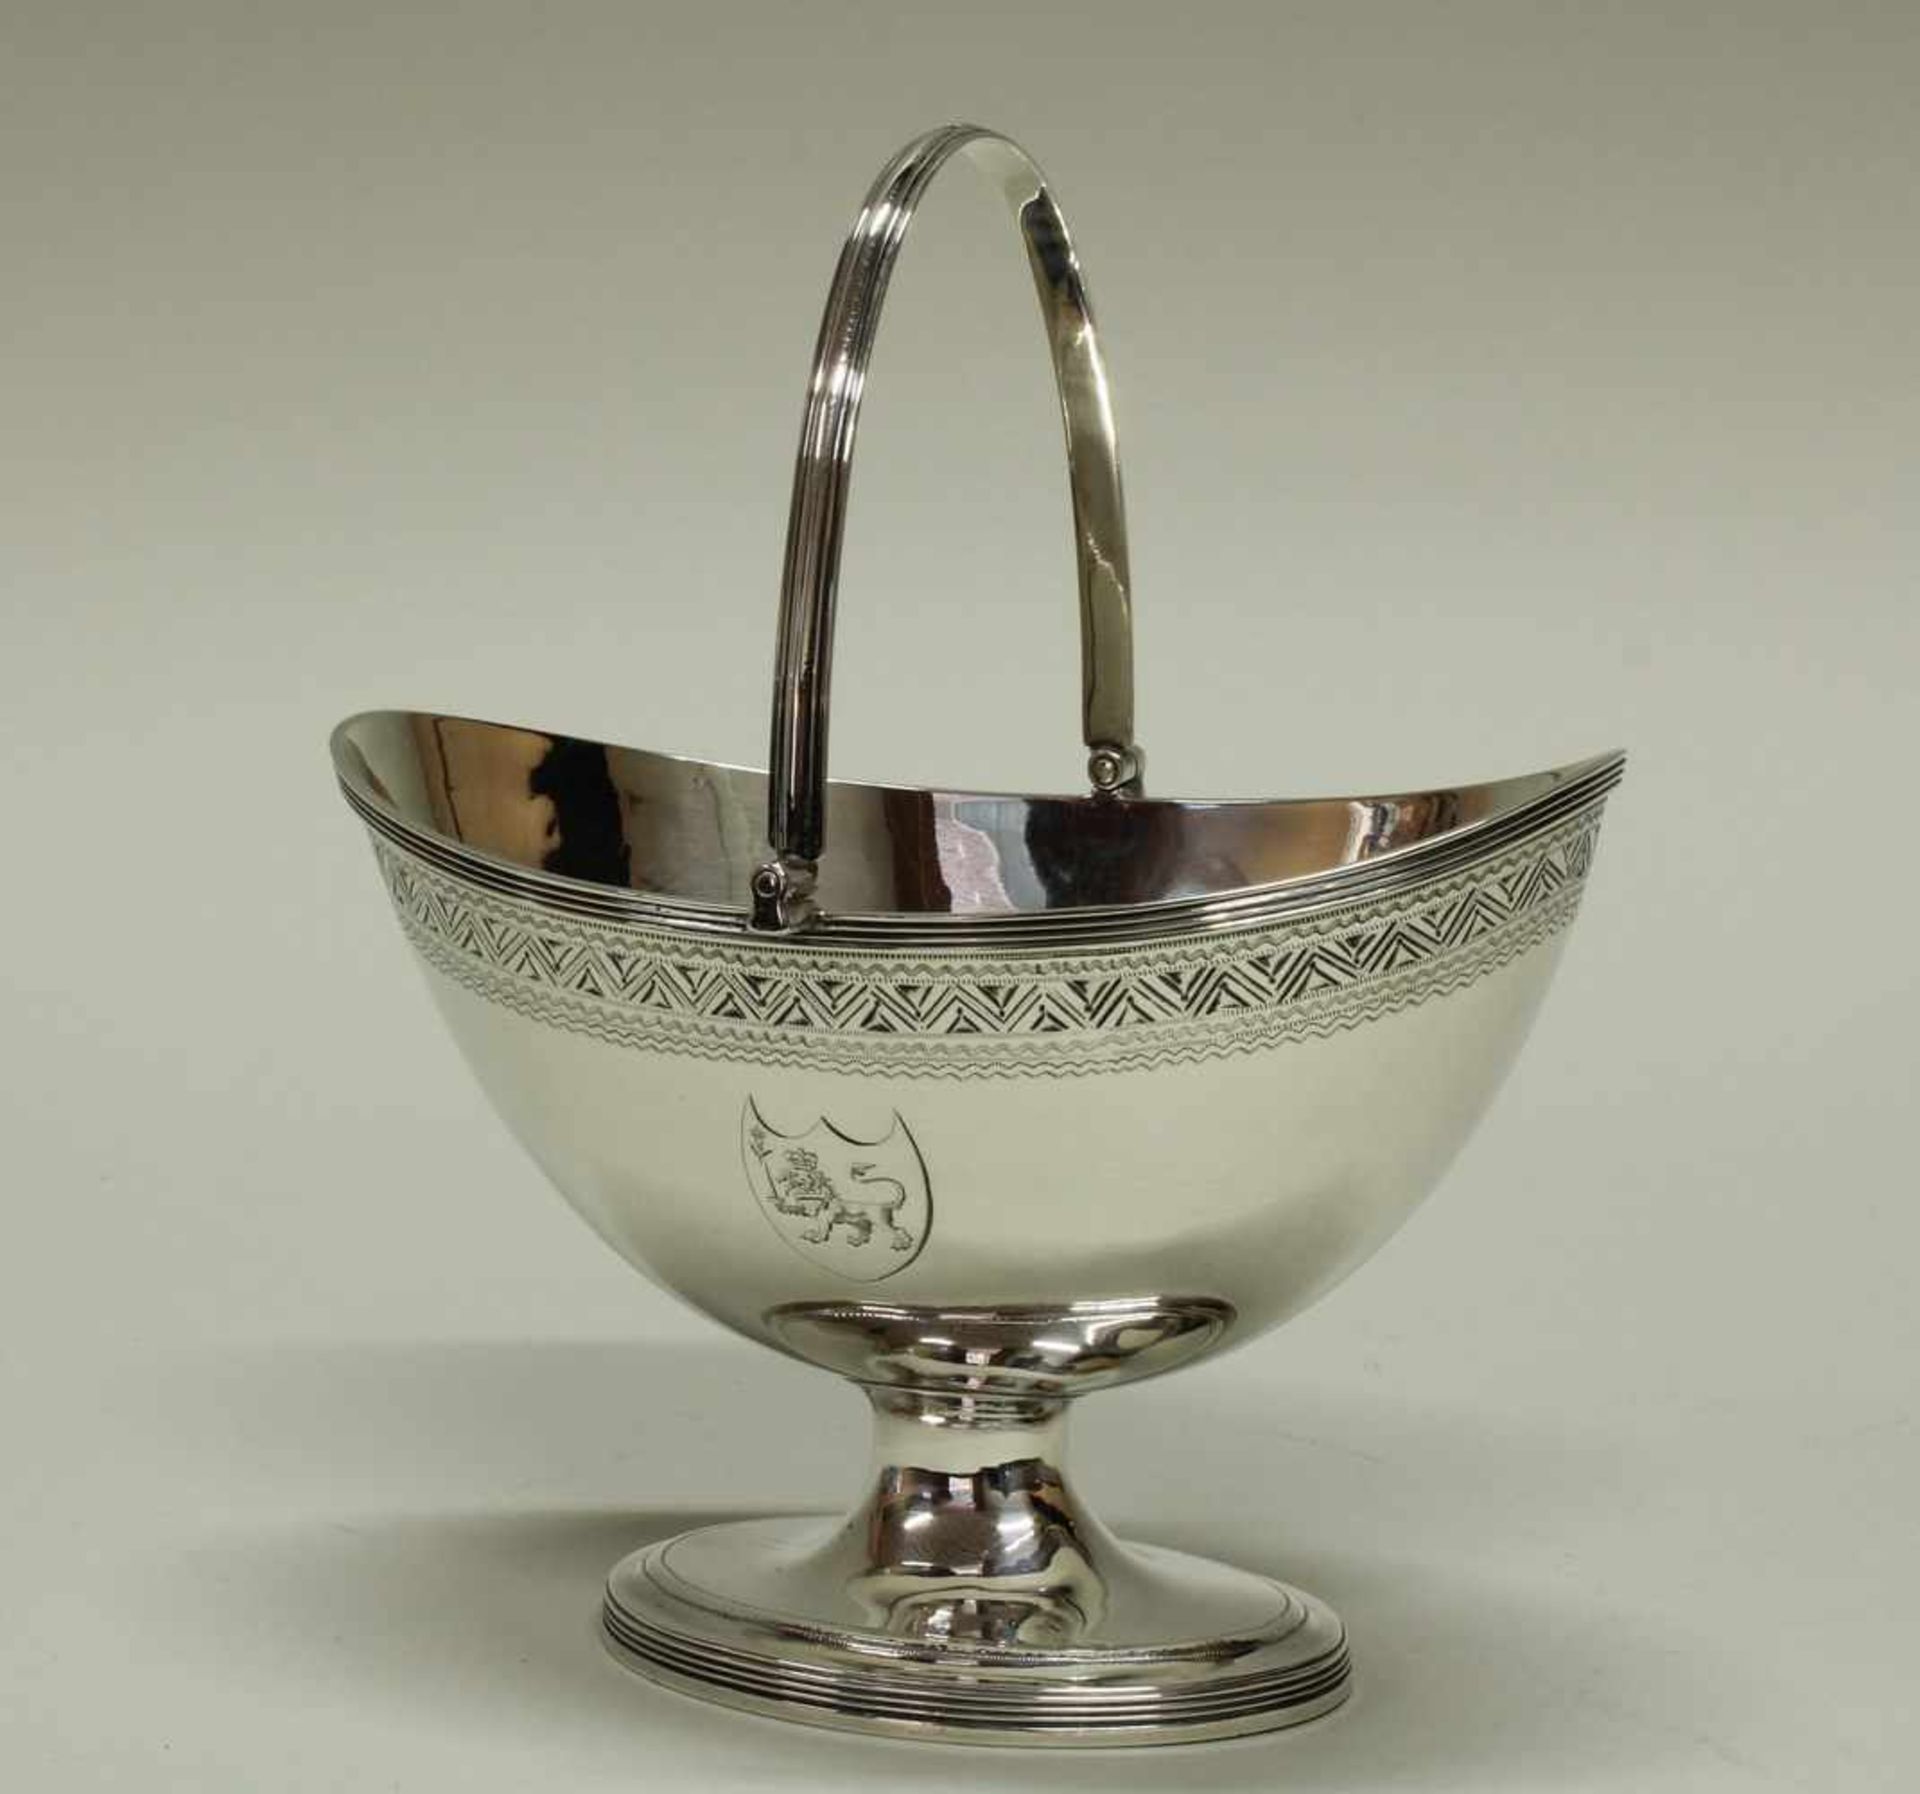 Zuckerschale, Silber 925, London, 1794, Henry Chawner, beweglicher Bügelhenkel, Zackenbordüre und